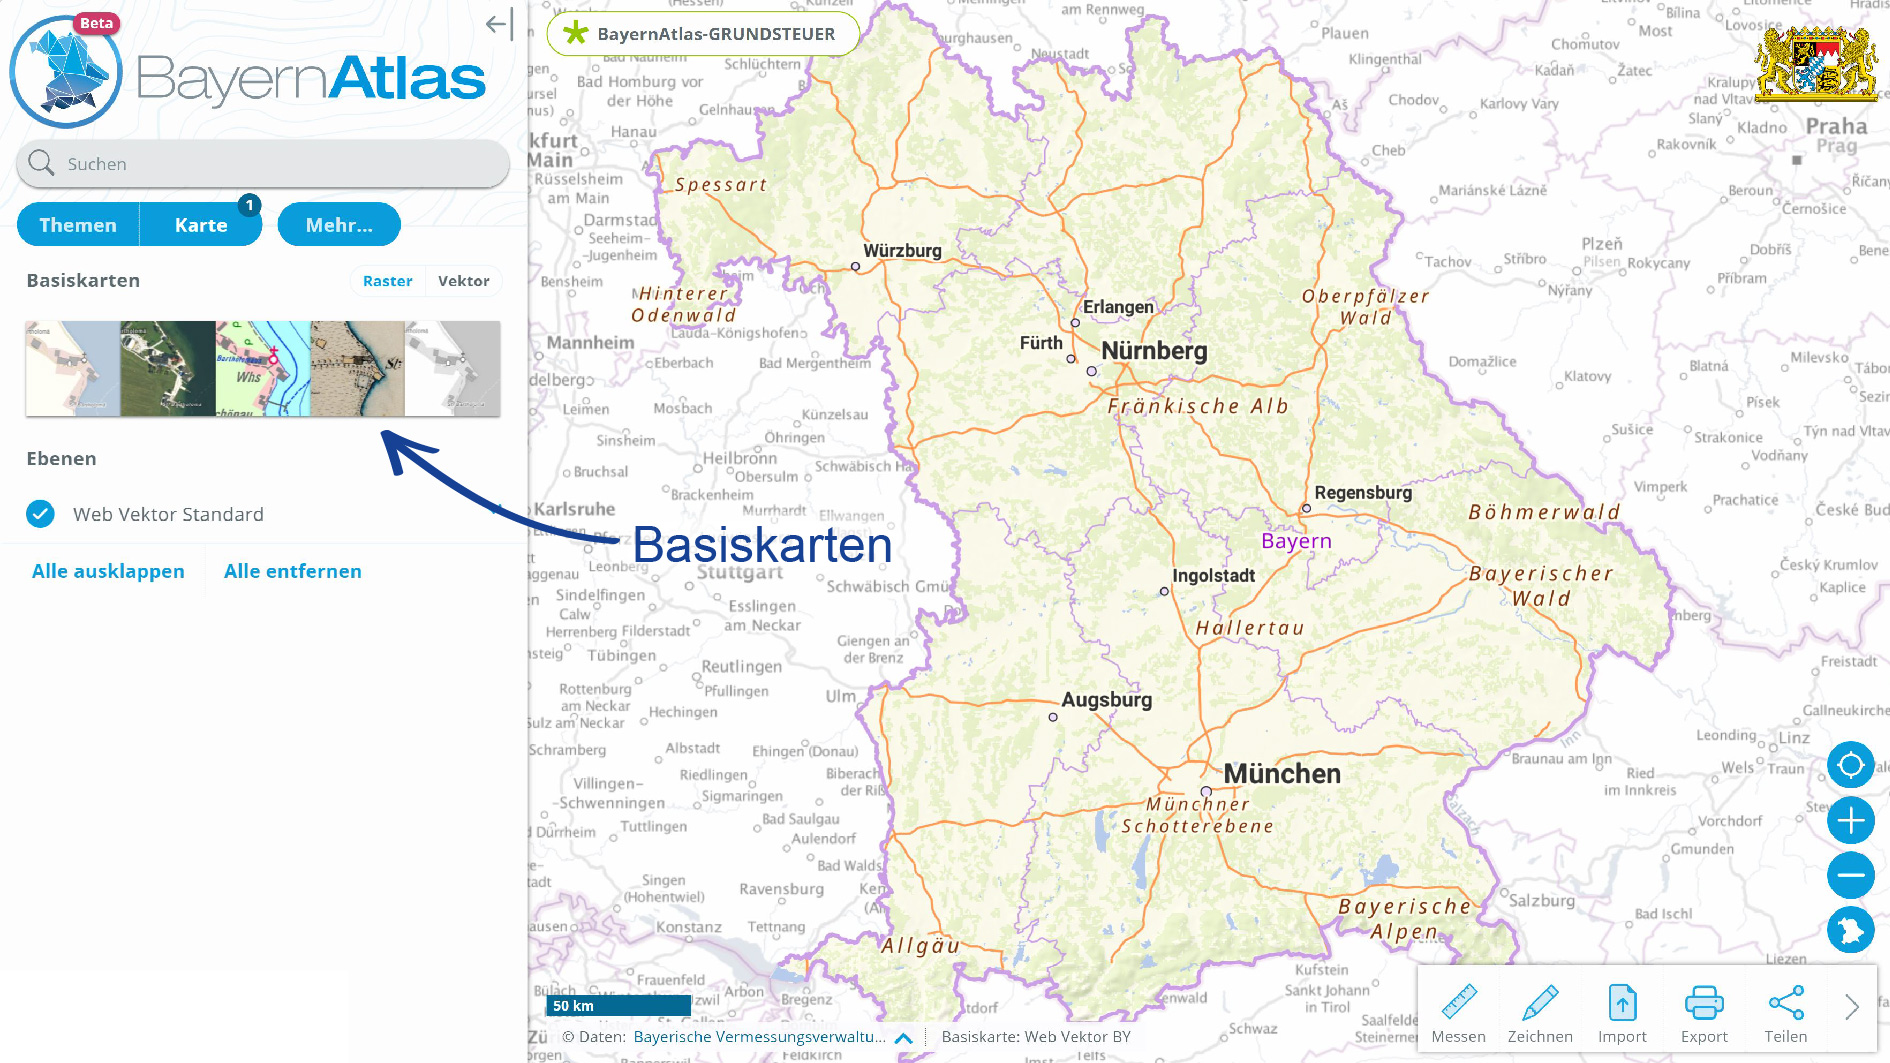 Screenshot aus dem BayernAtlas, welcher die Basiskarten zeigt